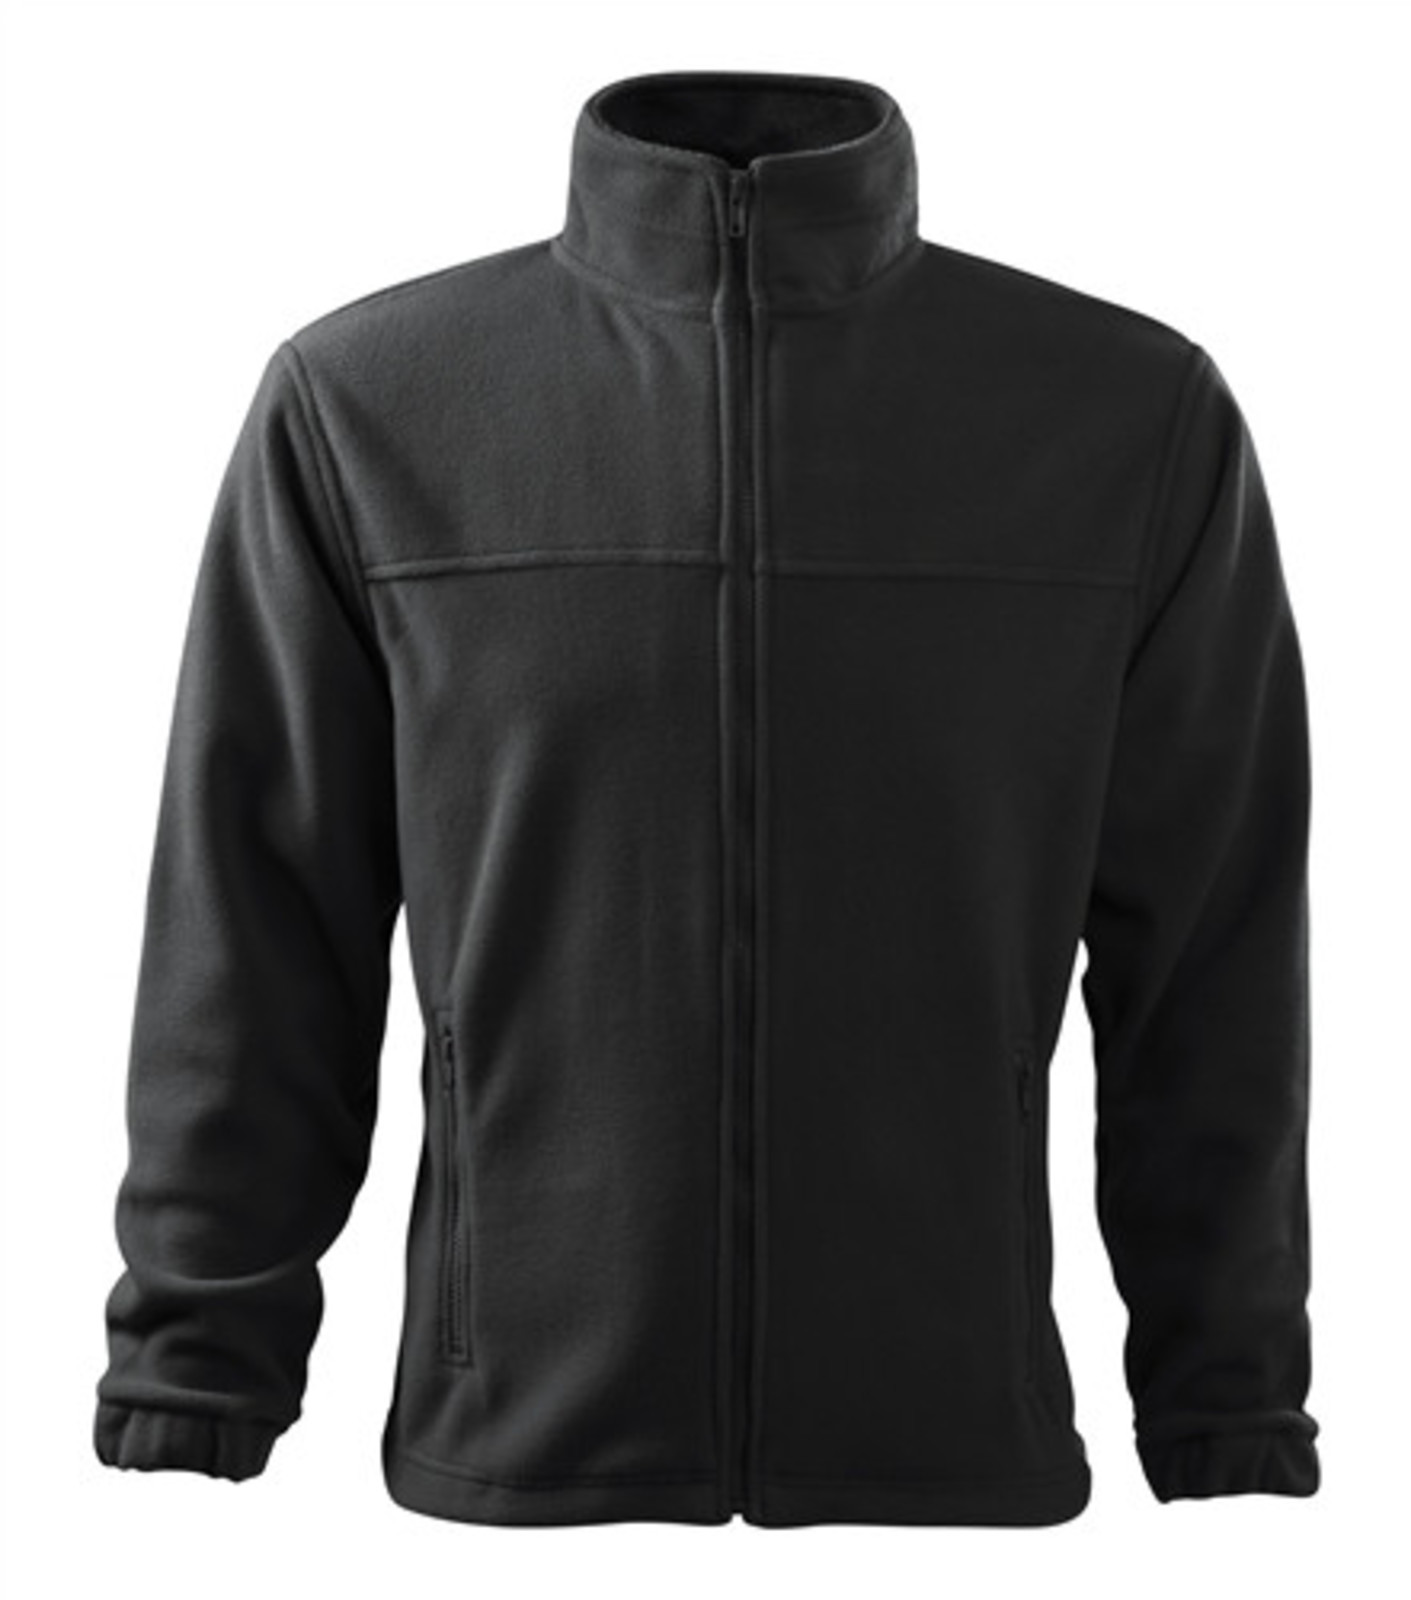 Pánska fleece mikina Rimeck Jacket 501 - veľkosť: M, farba: šedá ebony